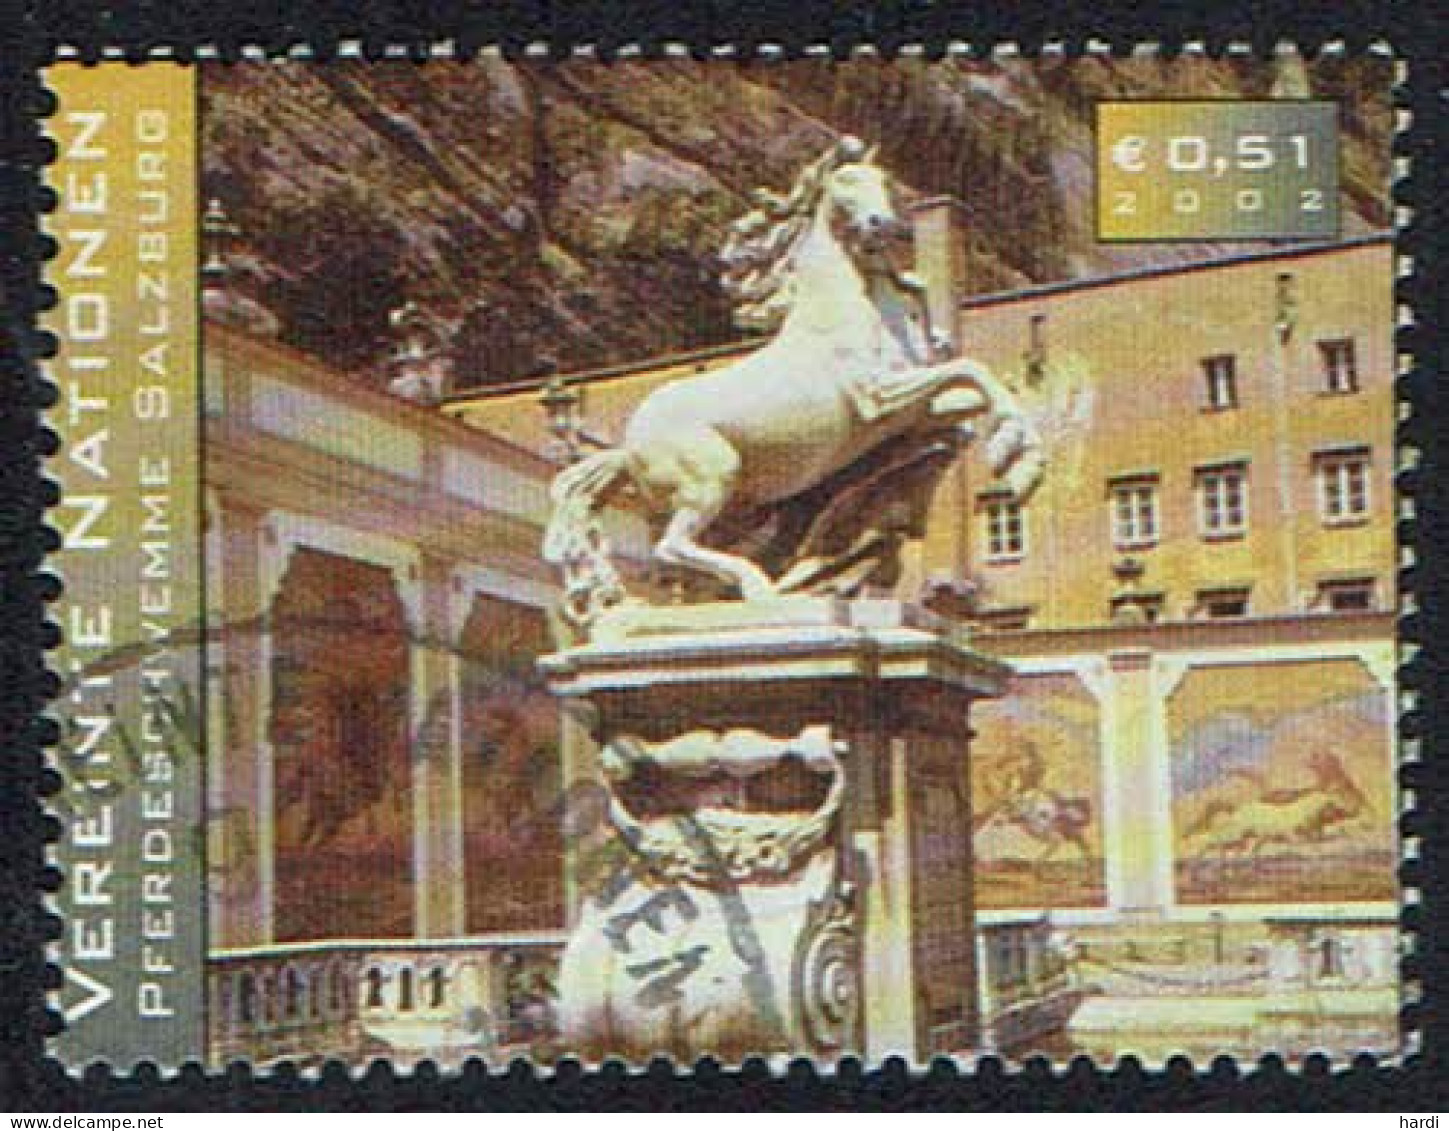 Vereinte Nationen Wien 2002, MiNr 352, Gestempelt - Used Stamps